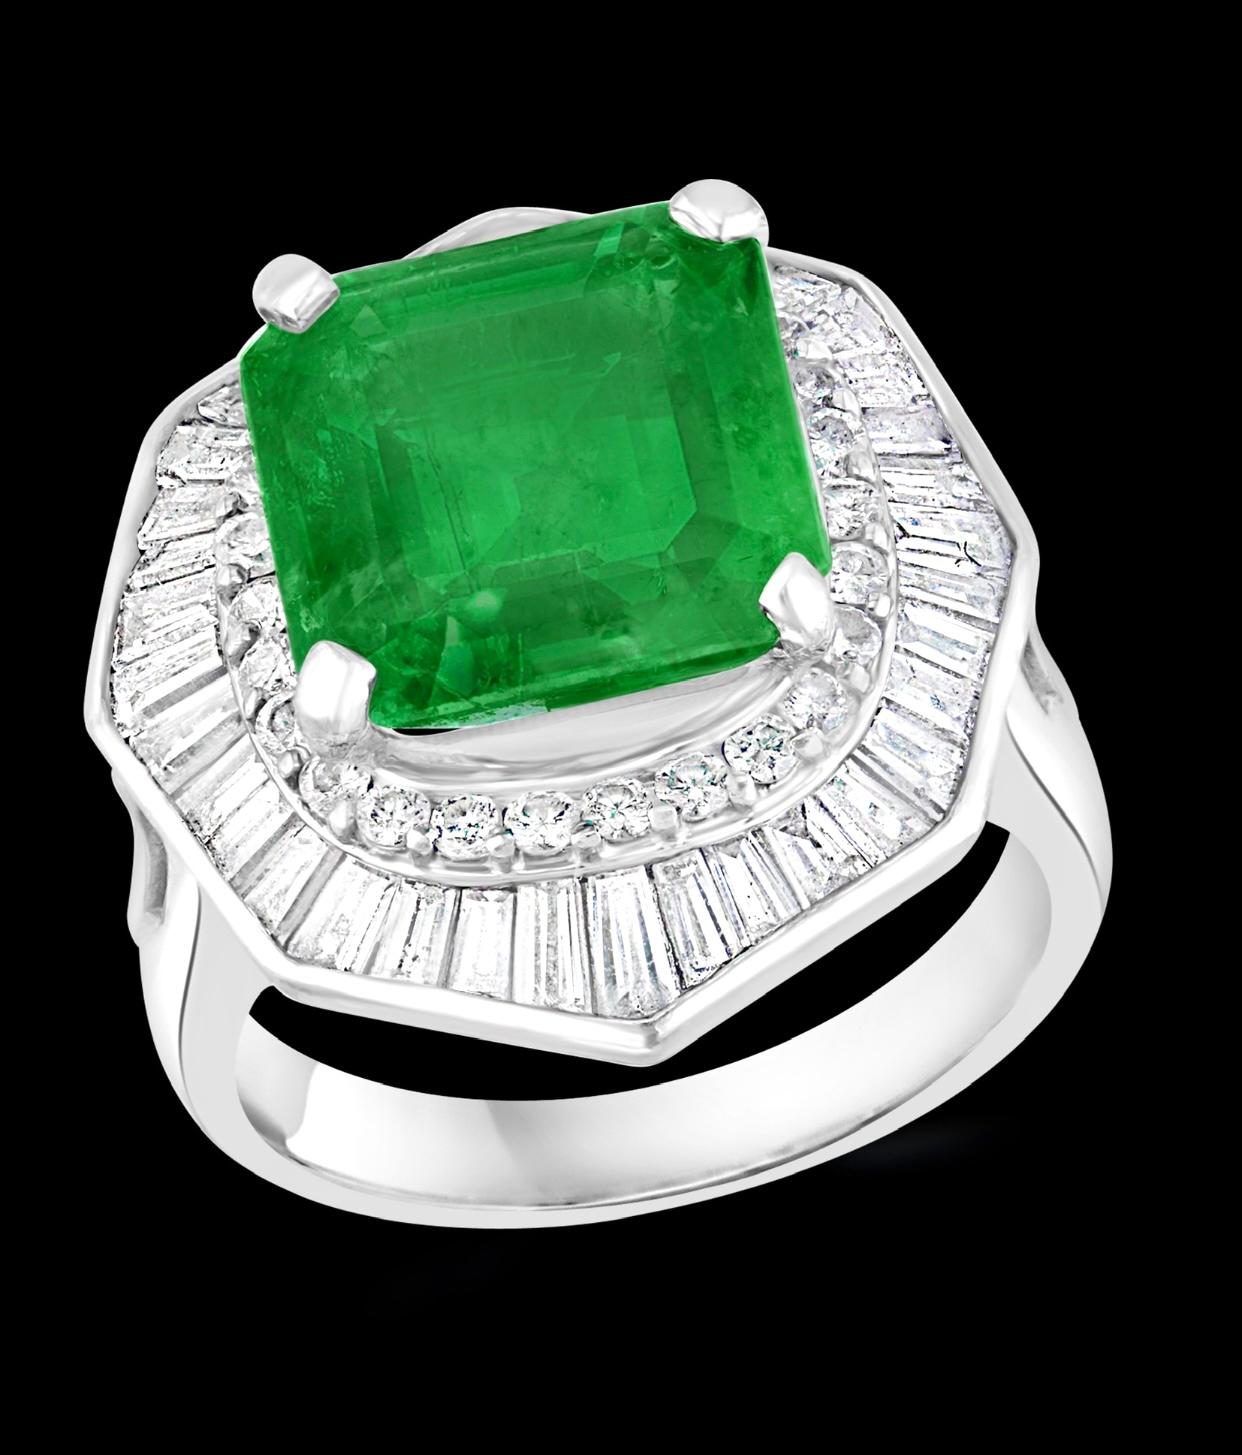 
6,5 Karat Smaragdschliff kolumbianischen Smaragd & 2,4 Karat Diamant Ring Platin Größe 5
Kolumbianische Smaragde sind sehr wertvoll, sehr schwer zu finden und werden immer schwieriger zu finden.
Ein klassischer Cocktail-Ring 
6,5 Karat 